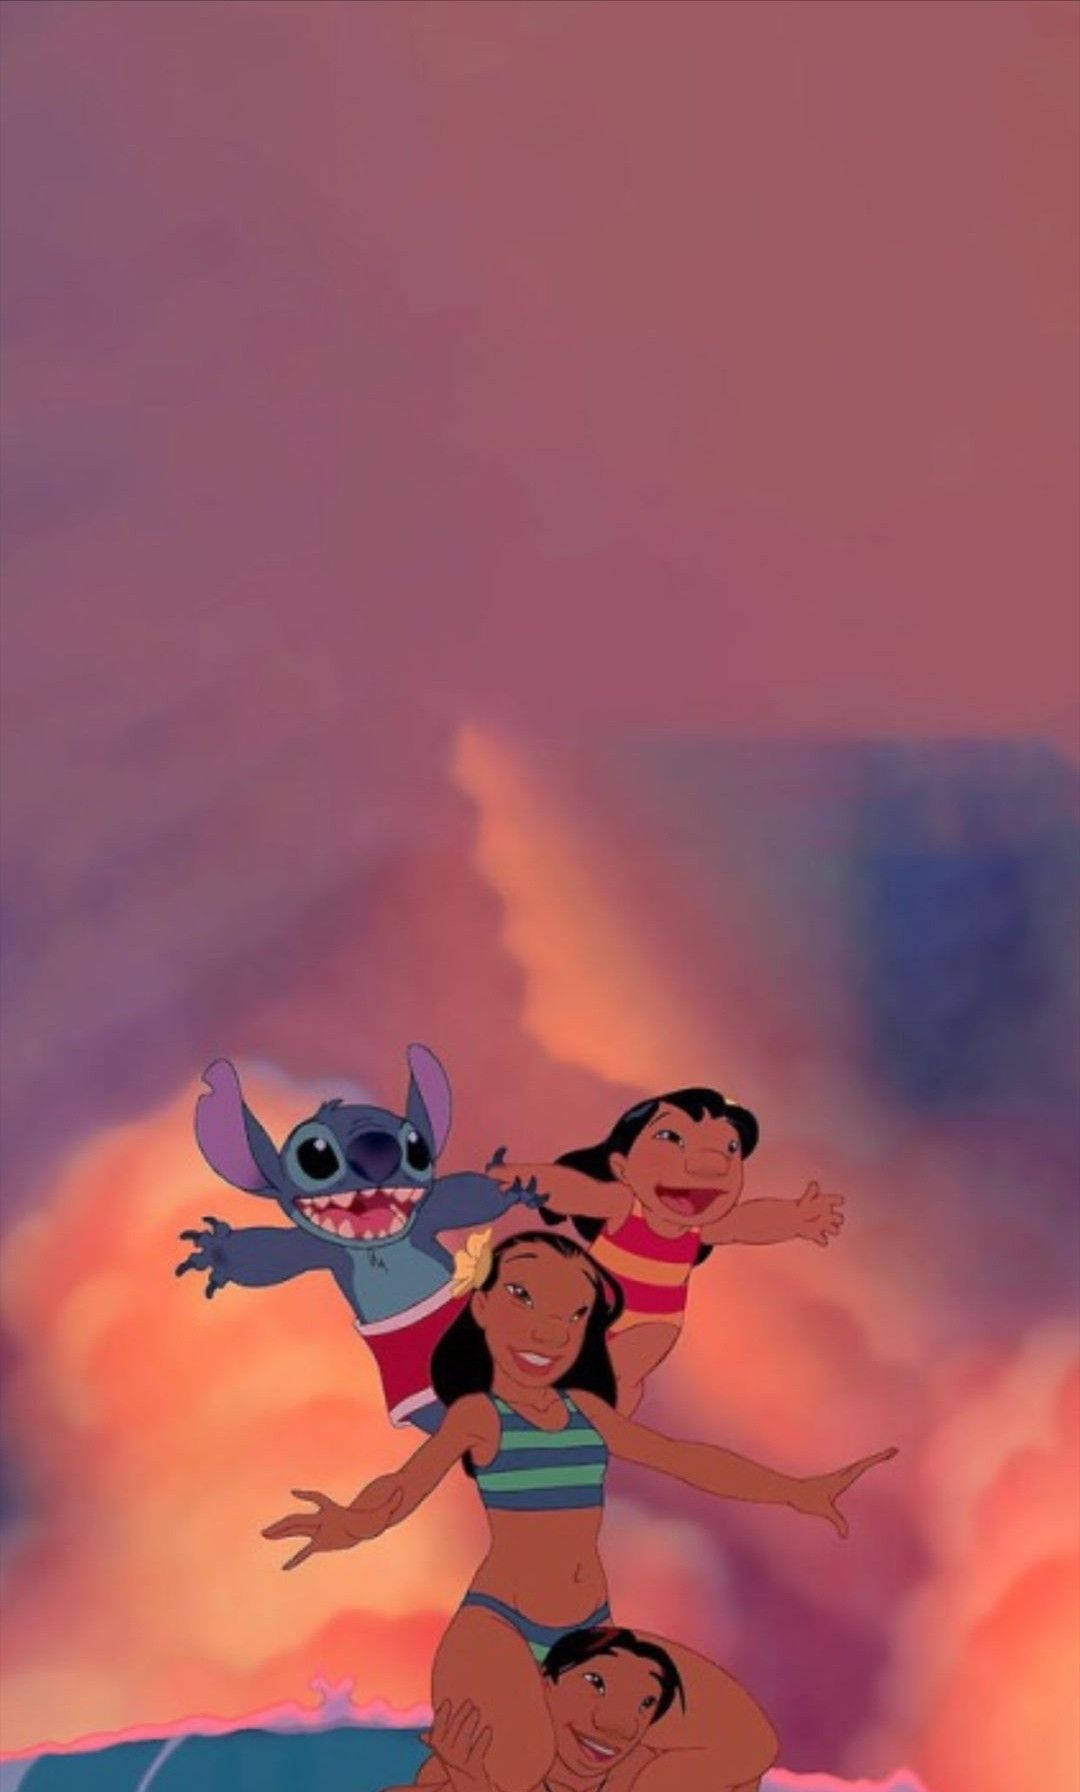 Lilo og Stitch, Nani og David ser glad ud sammen. Wallpaper